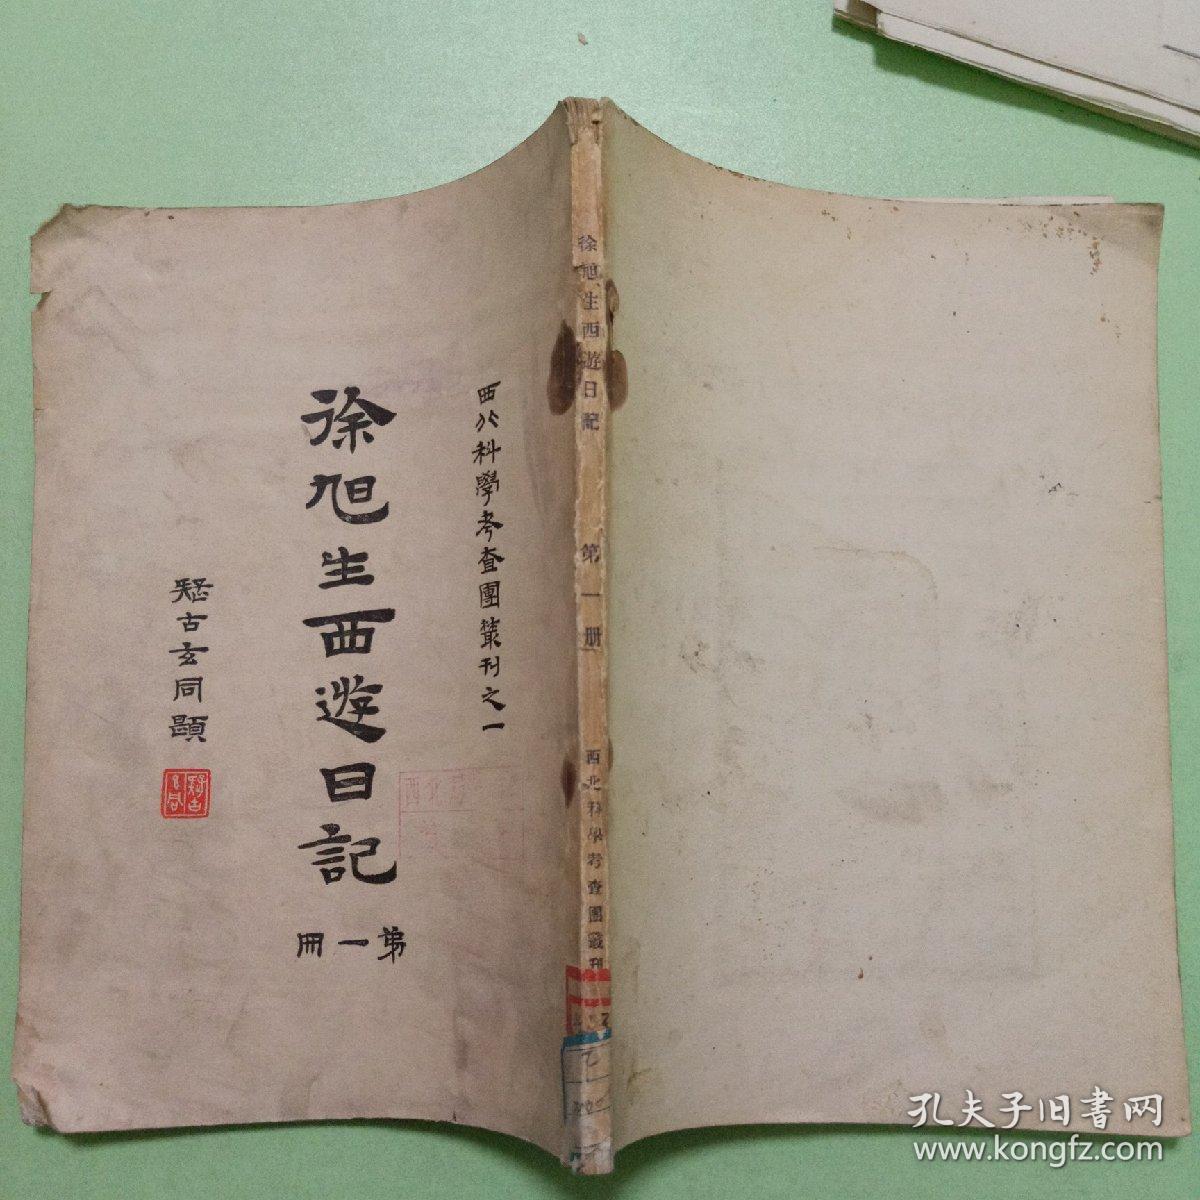 西北科学考察团丛刊之一：徐旭生西游日记（第一册）民国19年初版